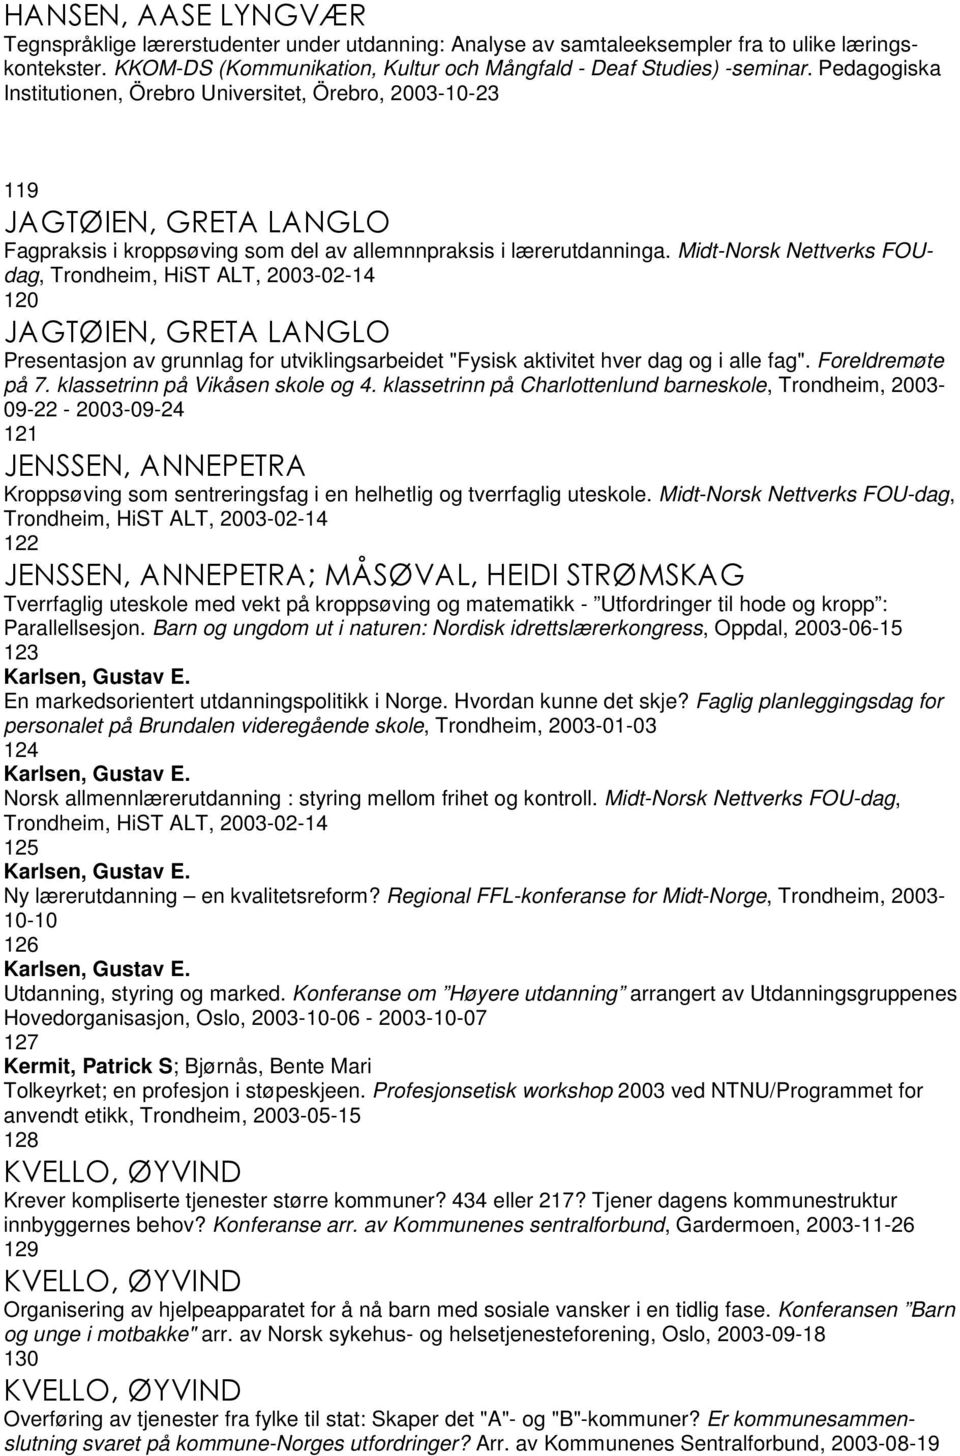 Midt-Norsk Nettverks FOUdag, Trondheim, HiST ALT, 2003-02-14 120 JAGTØIEN, GRETA LANGLO Presentasjon av grunnlag for utviklingsarbeidet "Fysisk aktivitet hver dag og i alle fag". Foreldremøte på 7.